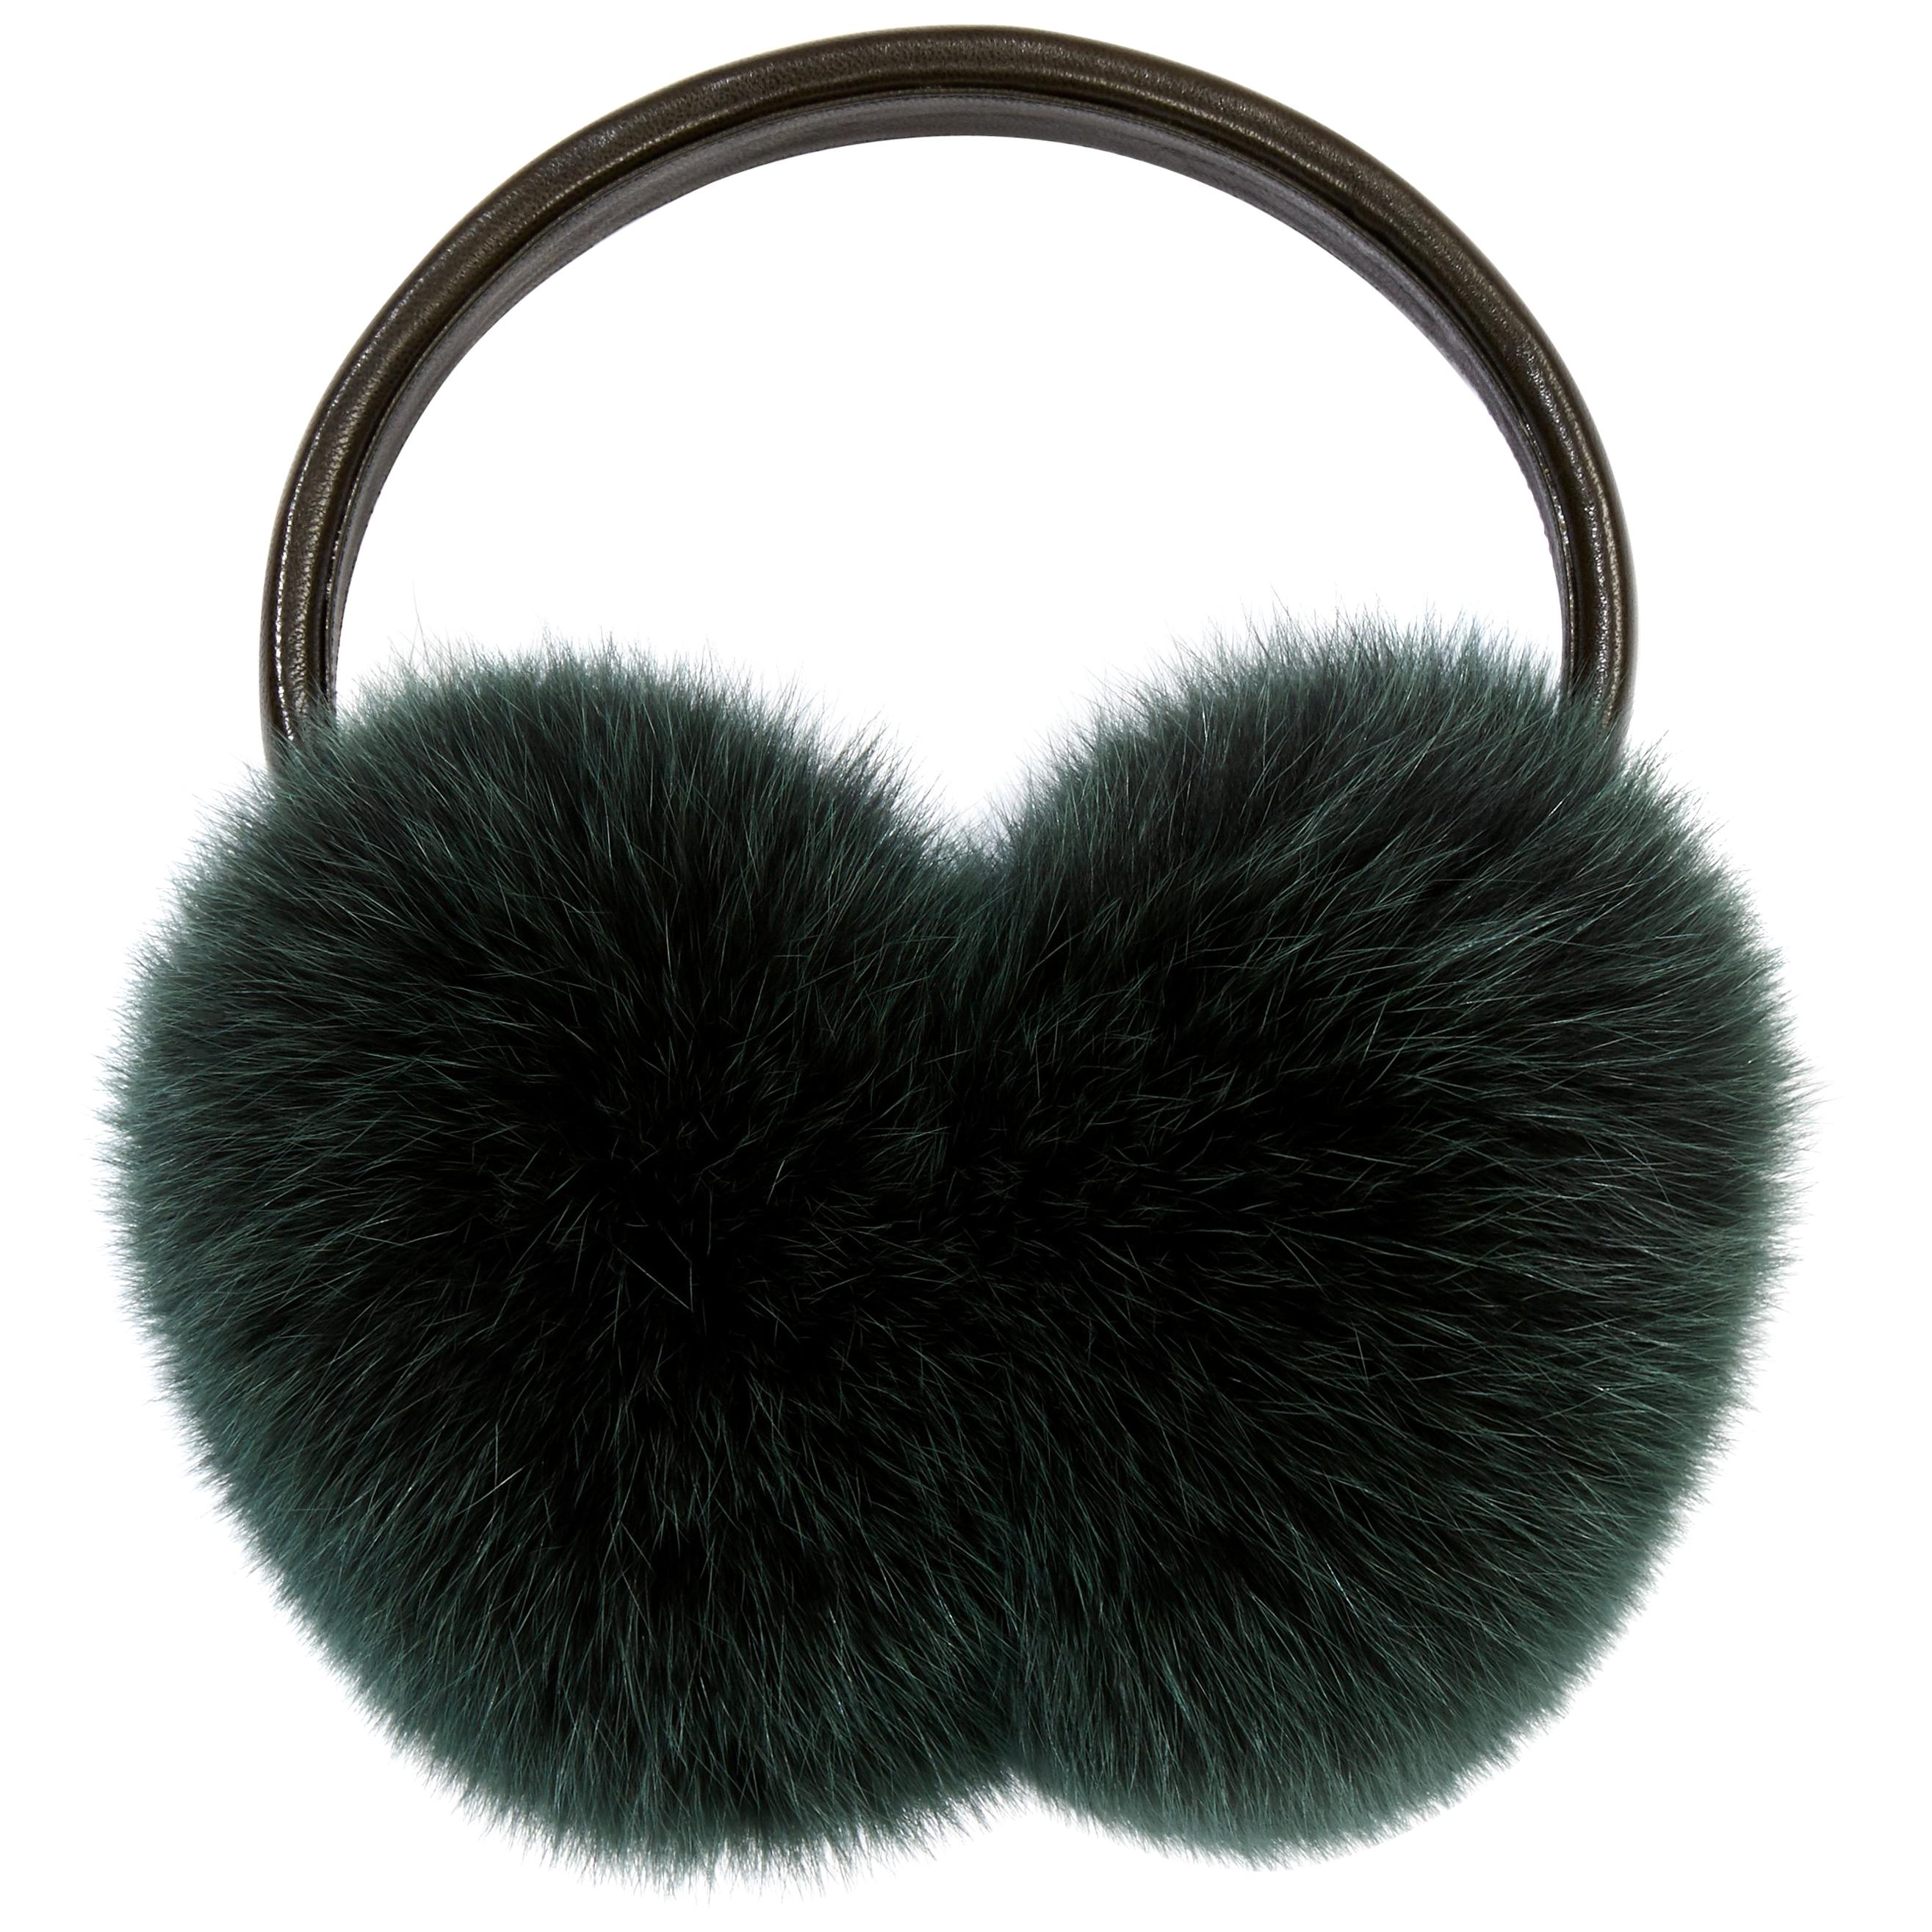 Verheyen London Ear Muffs in Olive Fox Fur